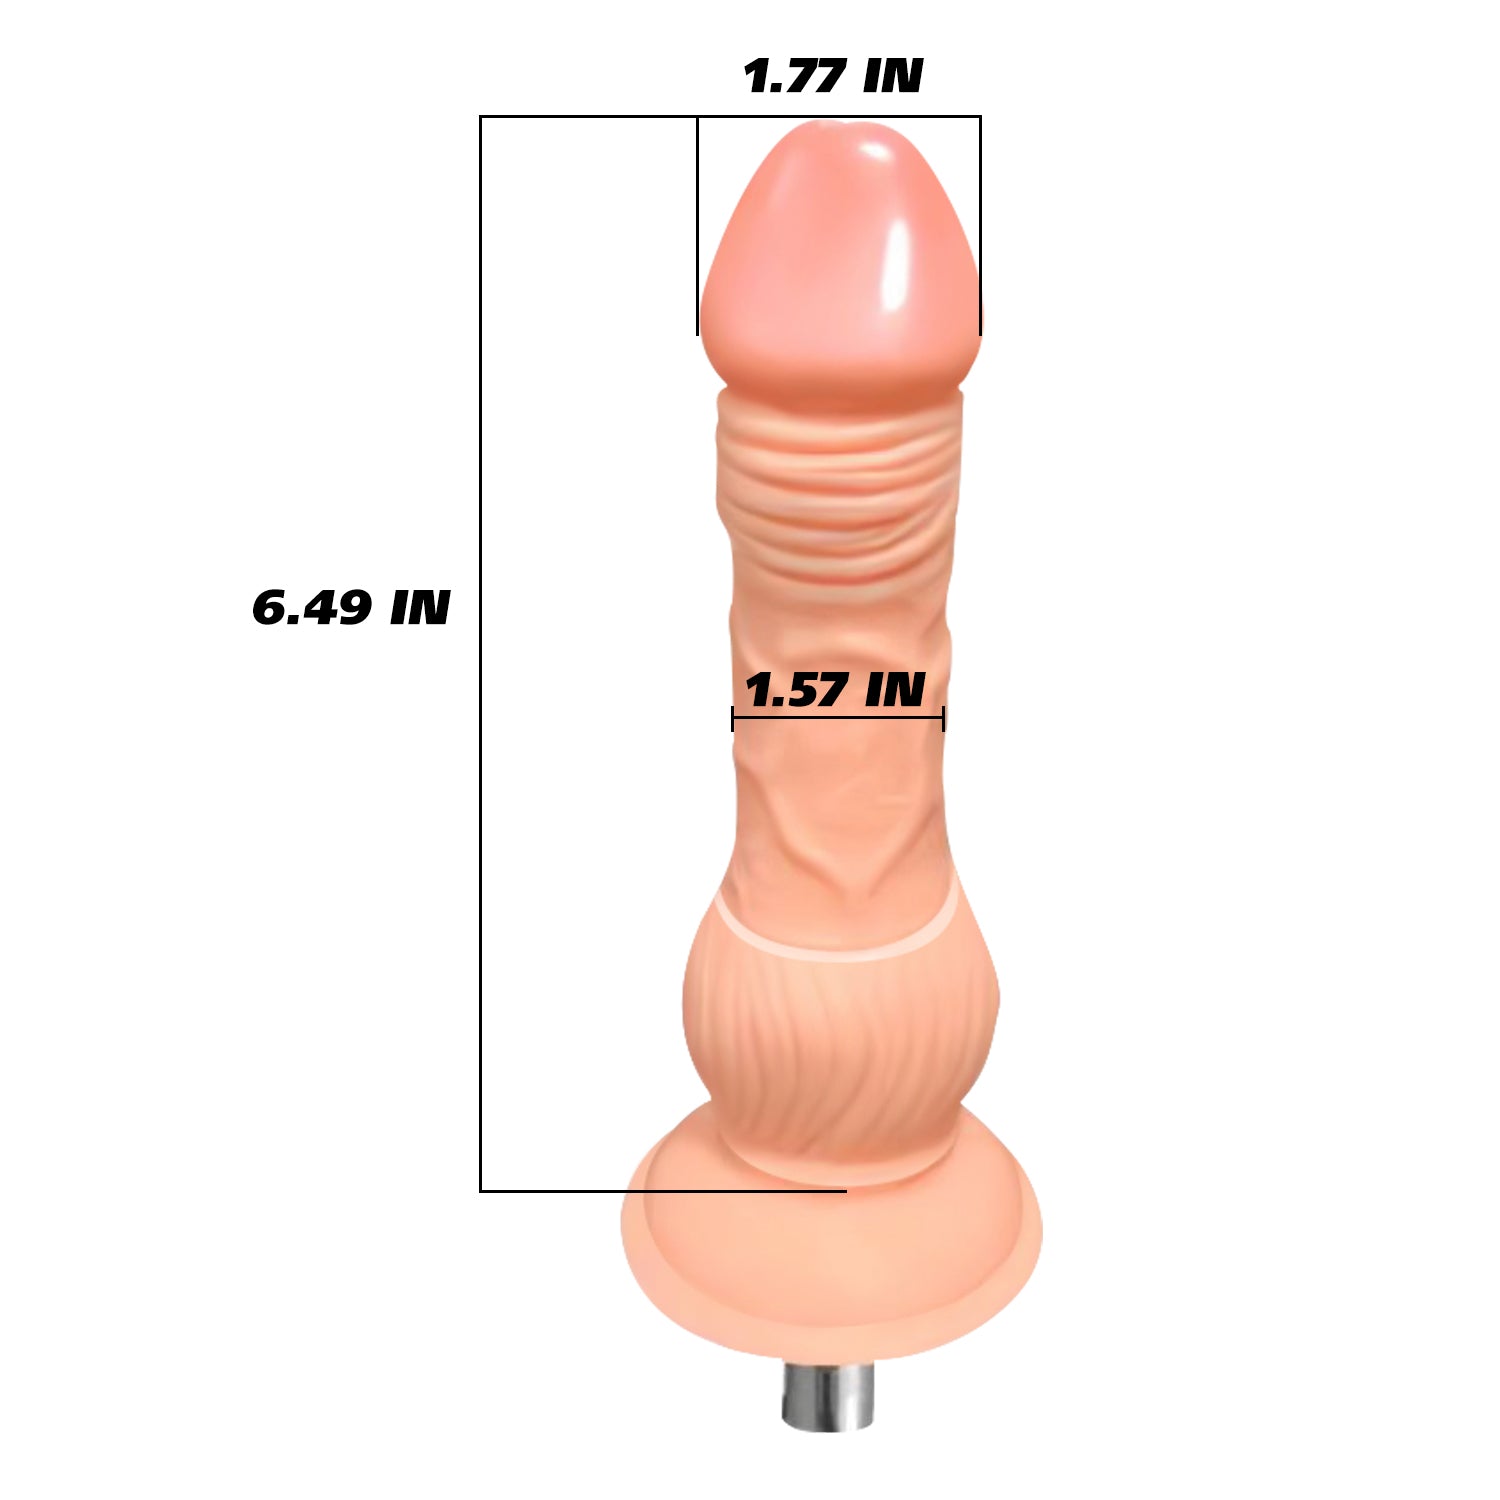 6.49 inch dildo attachment for sex machines